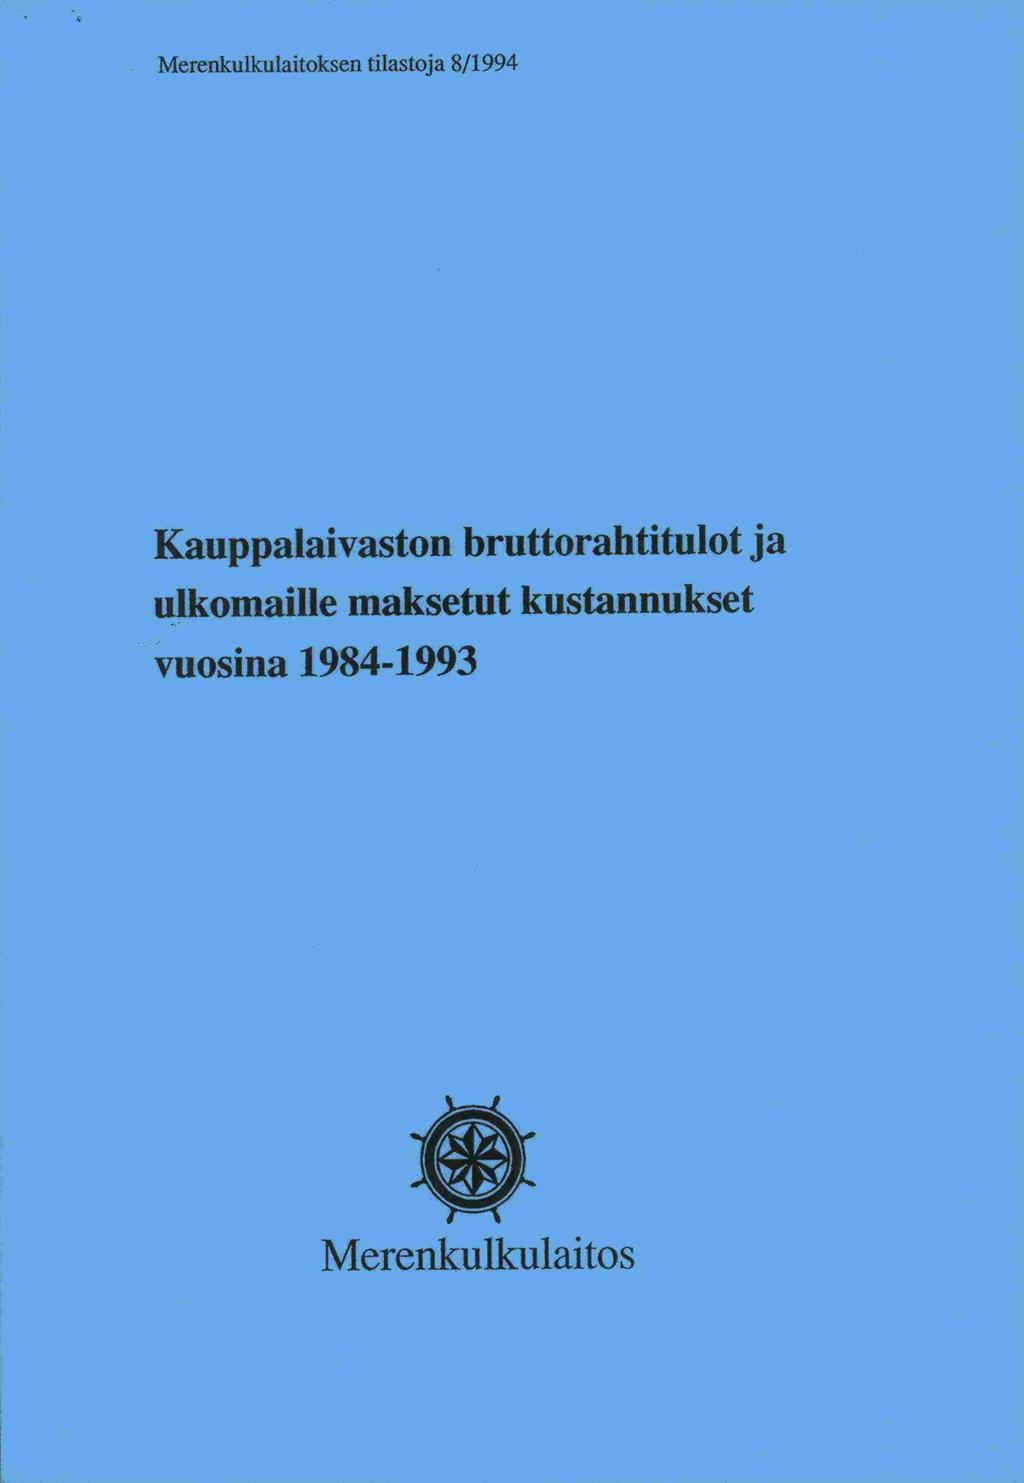 Merenkulkulaitoksen tilastoja 8/1994 Kauppalaivaston bruttorahtitulot